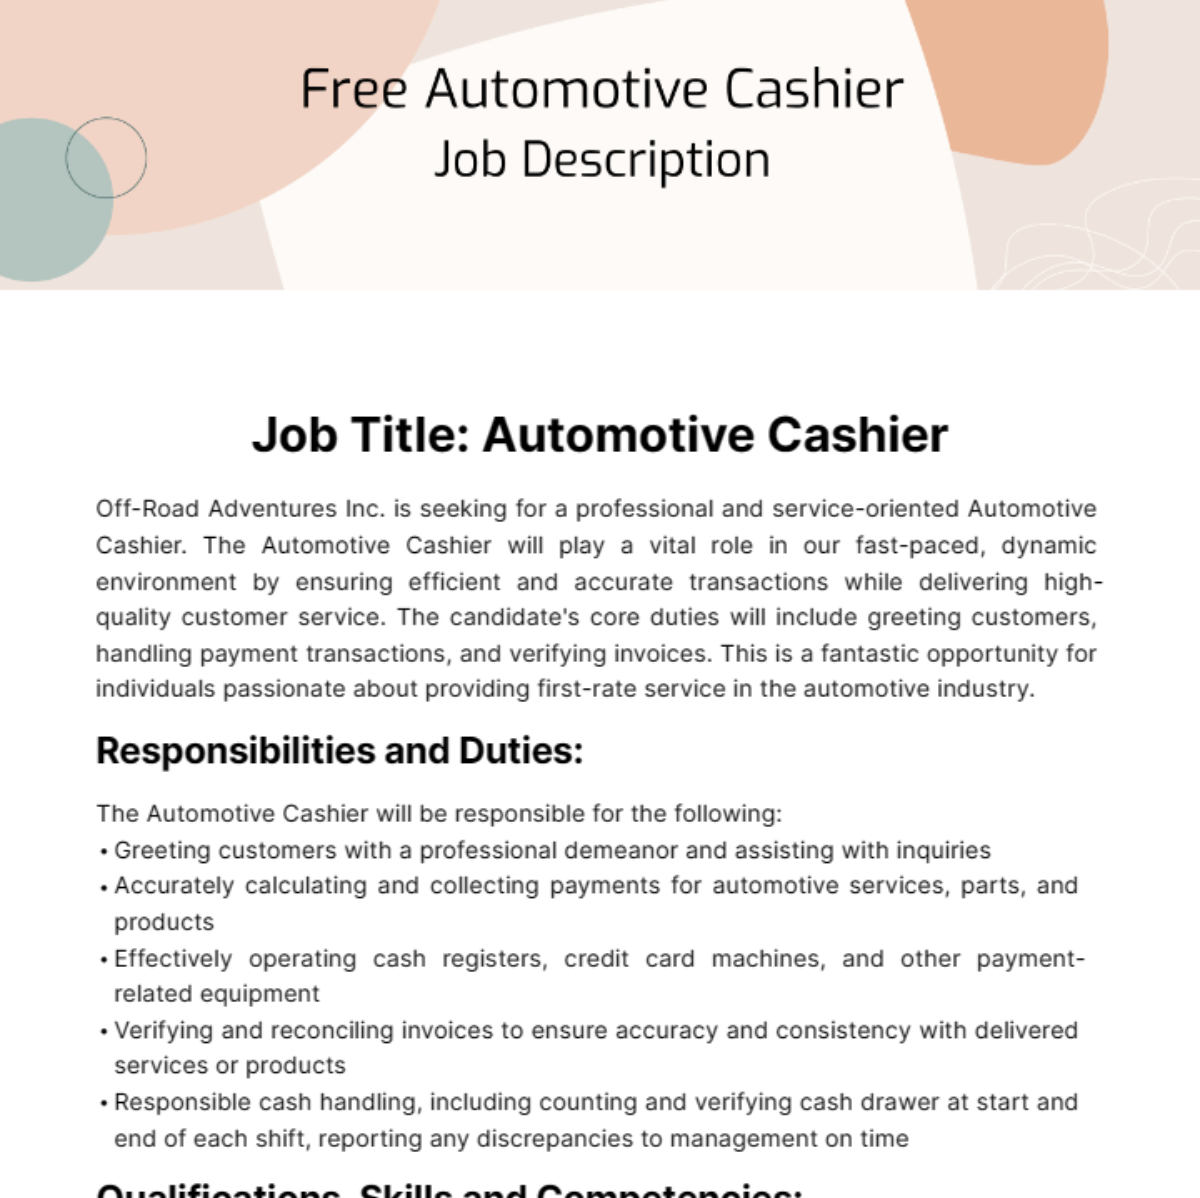 Free Automotive Cashier Job Description Template